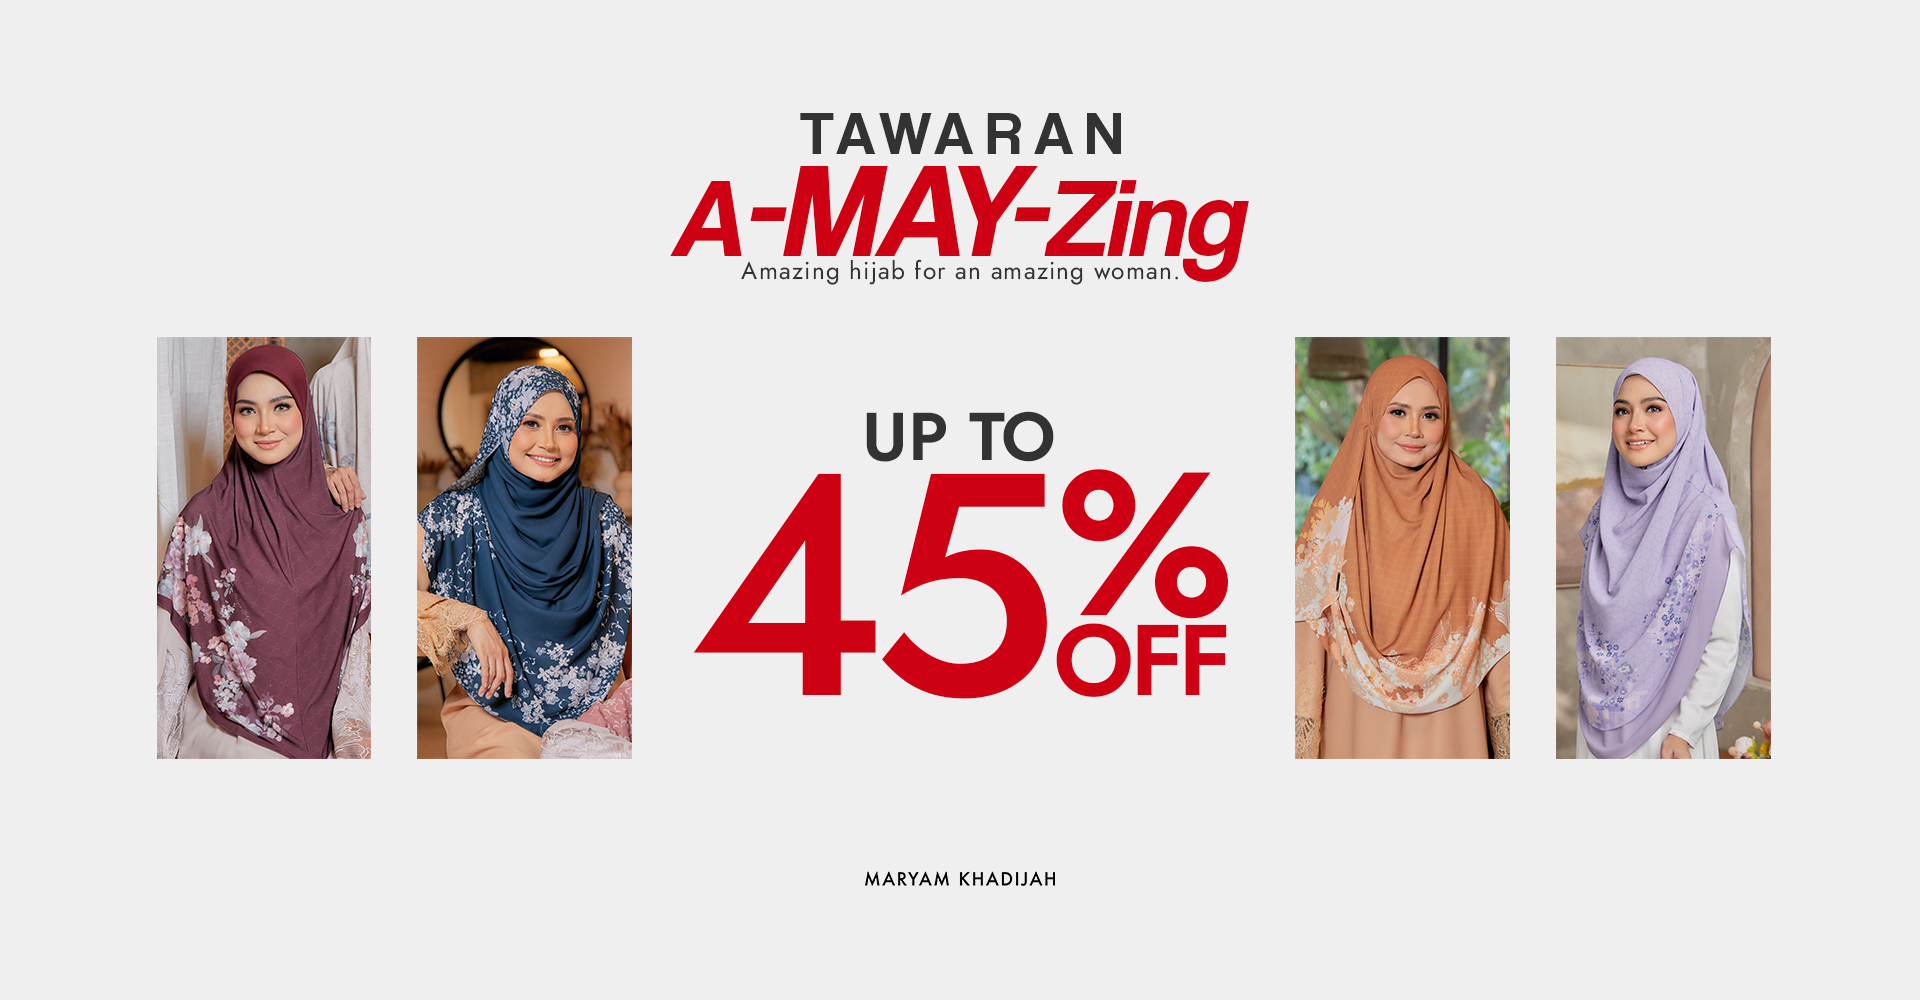 Tawaran A-May-Zing